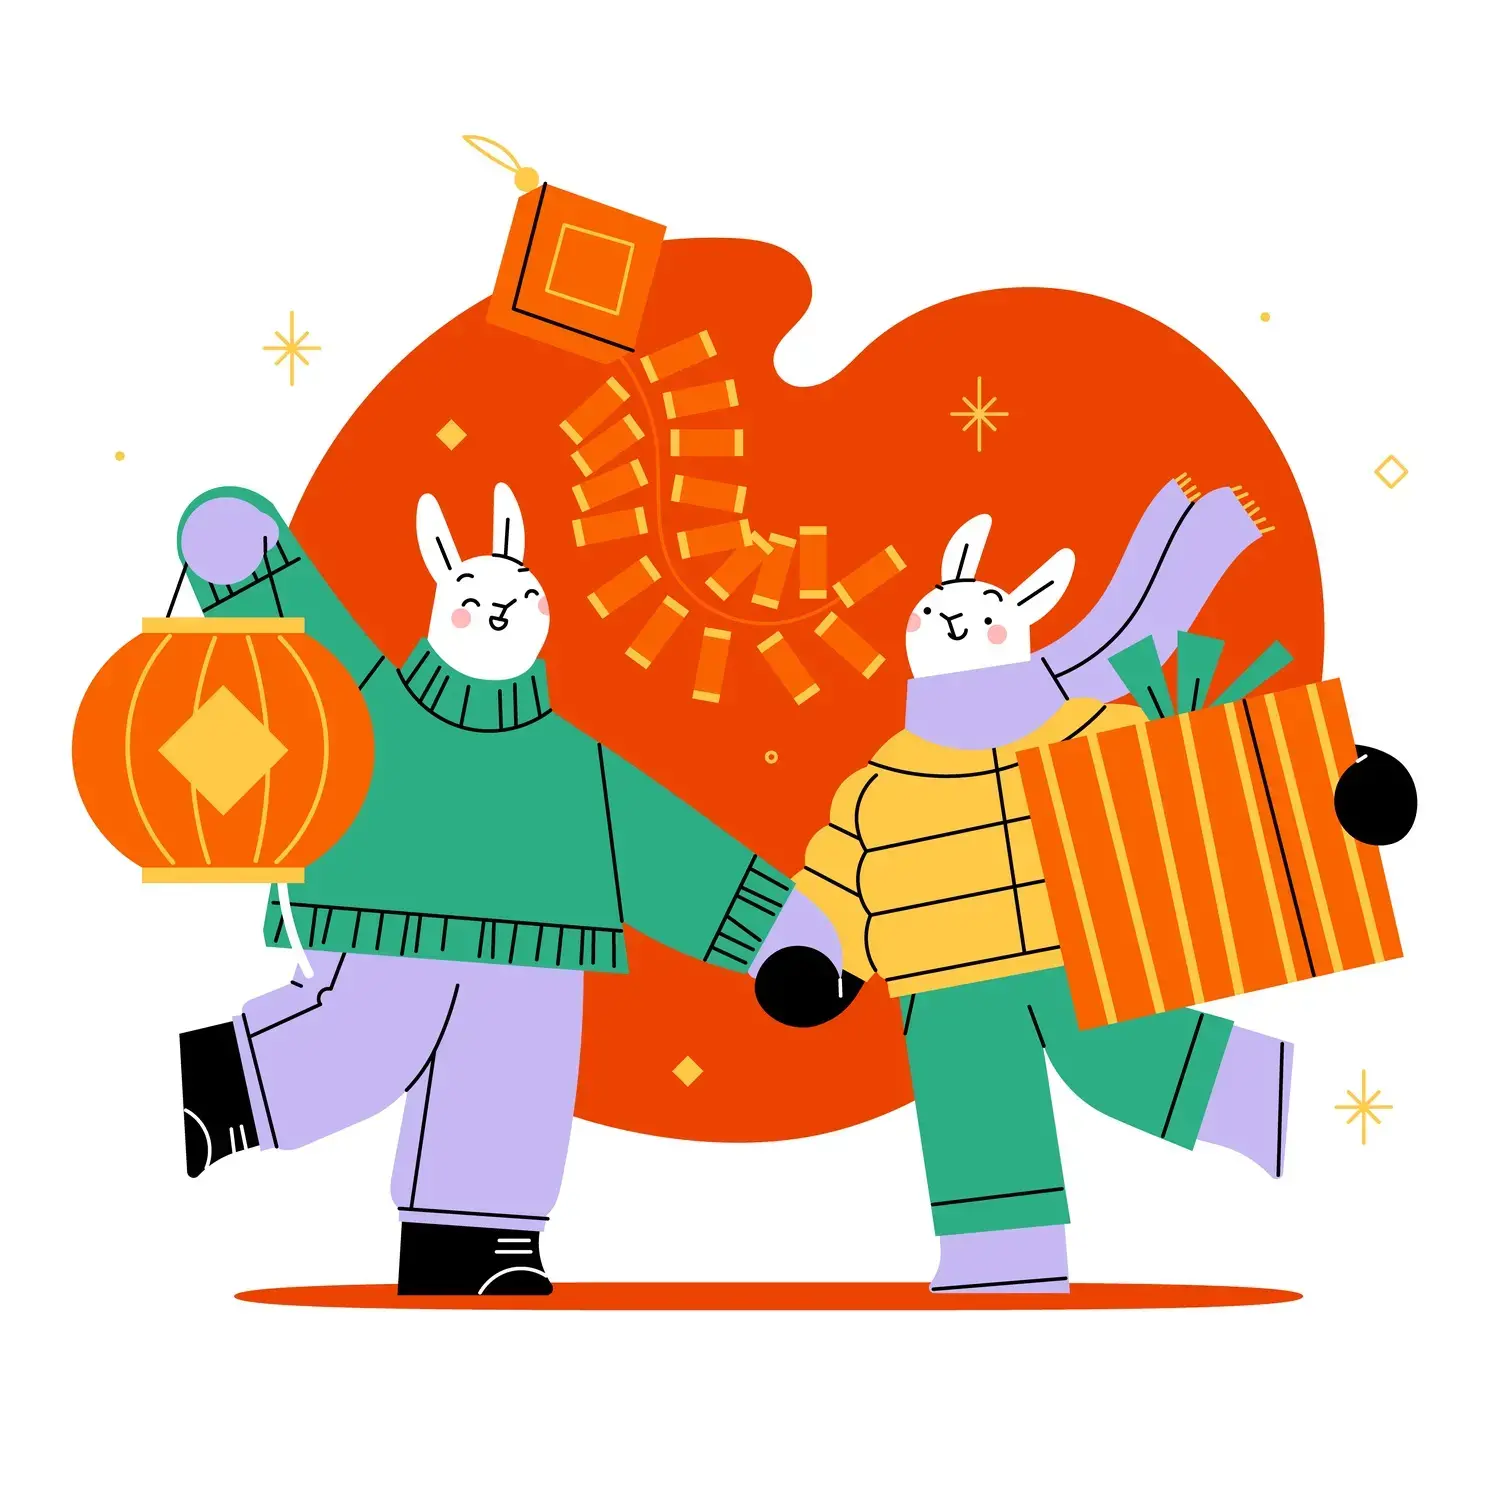 潮流趣味卡通可爱兔子兔年新年春节插画banner海报AI矢量设计素材-爱设计爱分享c